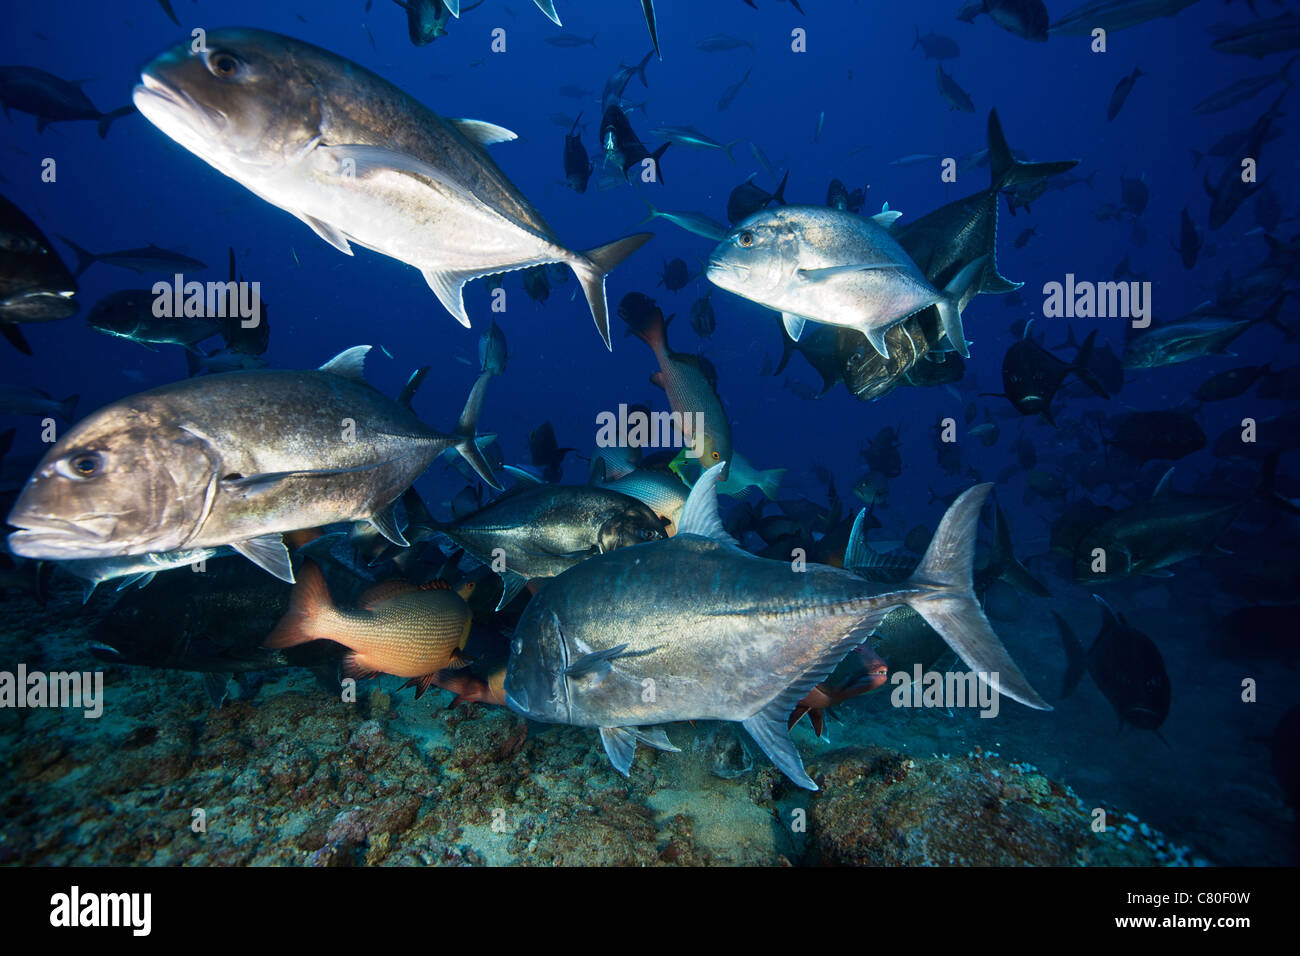 La scolarizzazione gigante muscolo carangidi c in modo da ottenere i pesci più grandi porzioni di sfrido da uno squalo feed, Fiji. Foto Stock